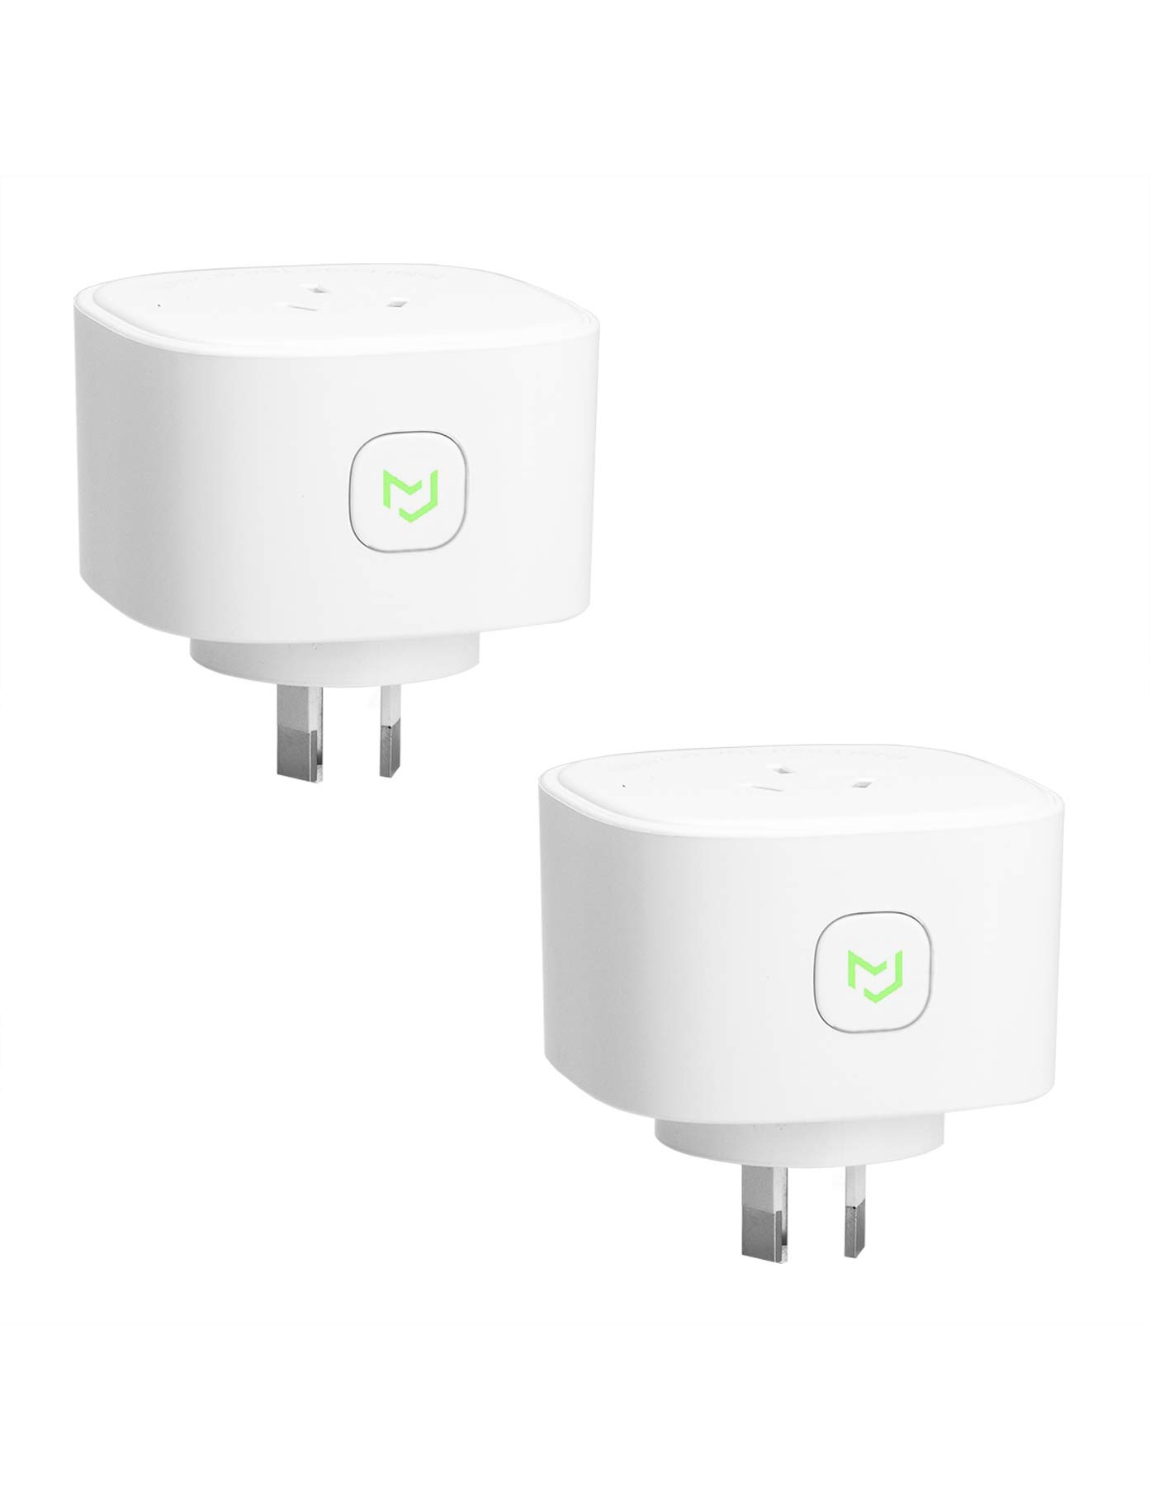 ESP32 WiFi Smart Plug in Energy Monitor - MOKOSmart